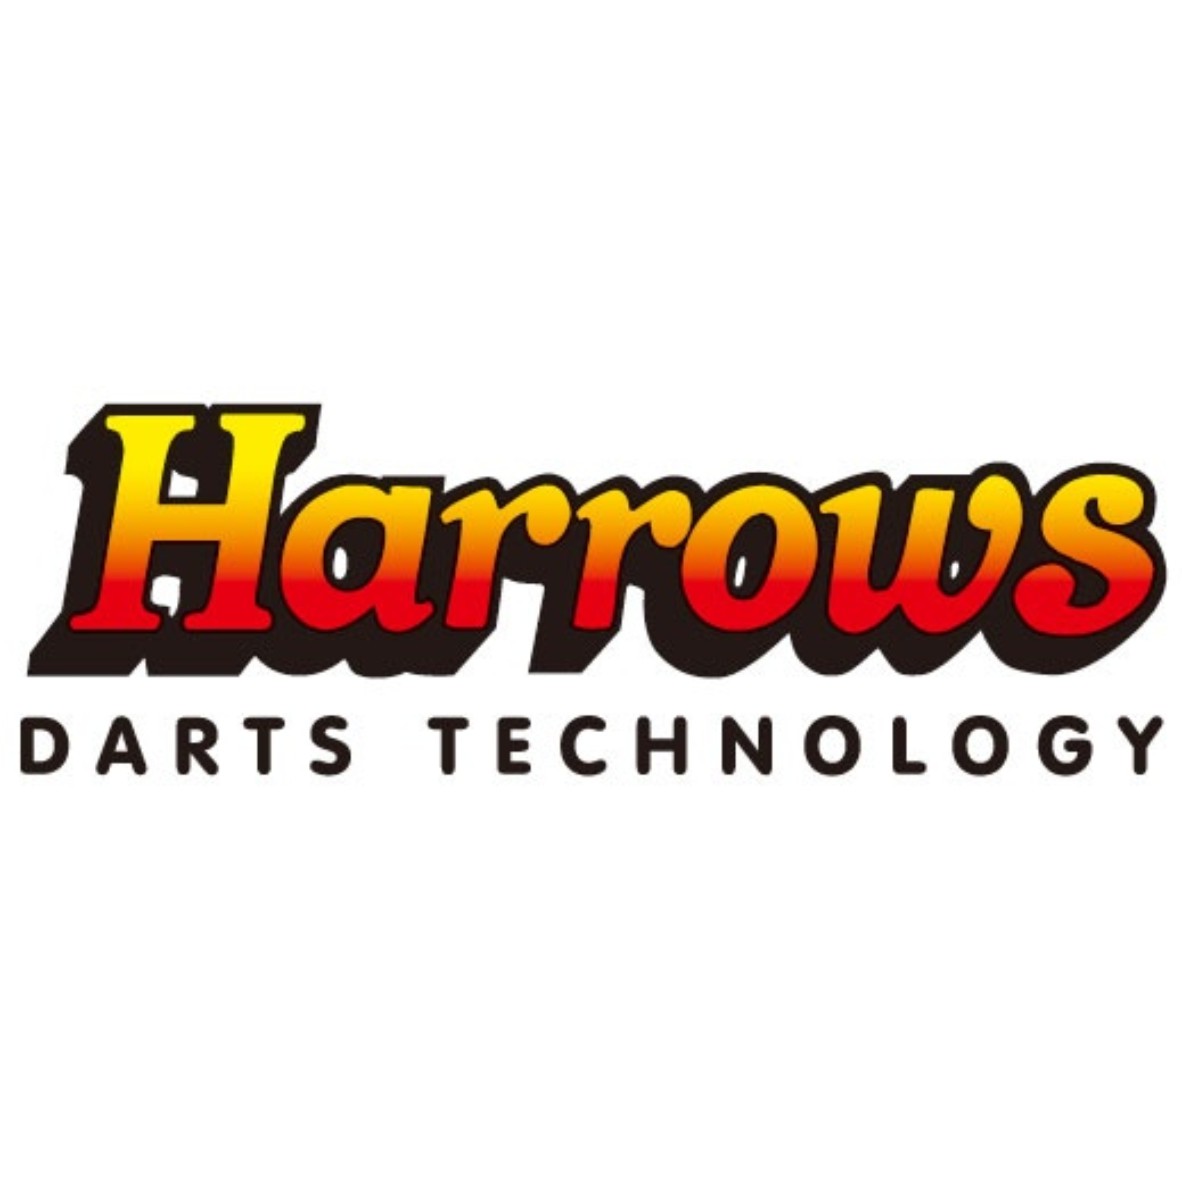 Harrows Darts